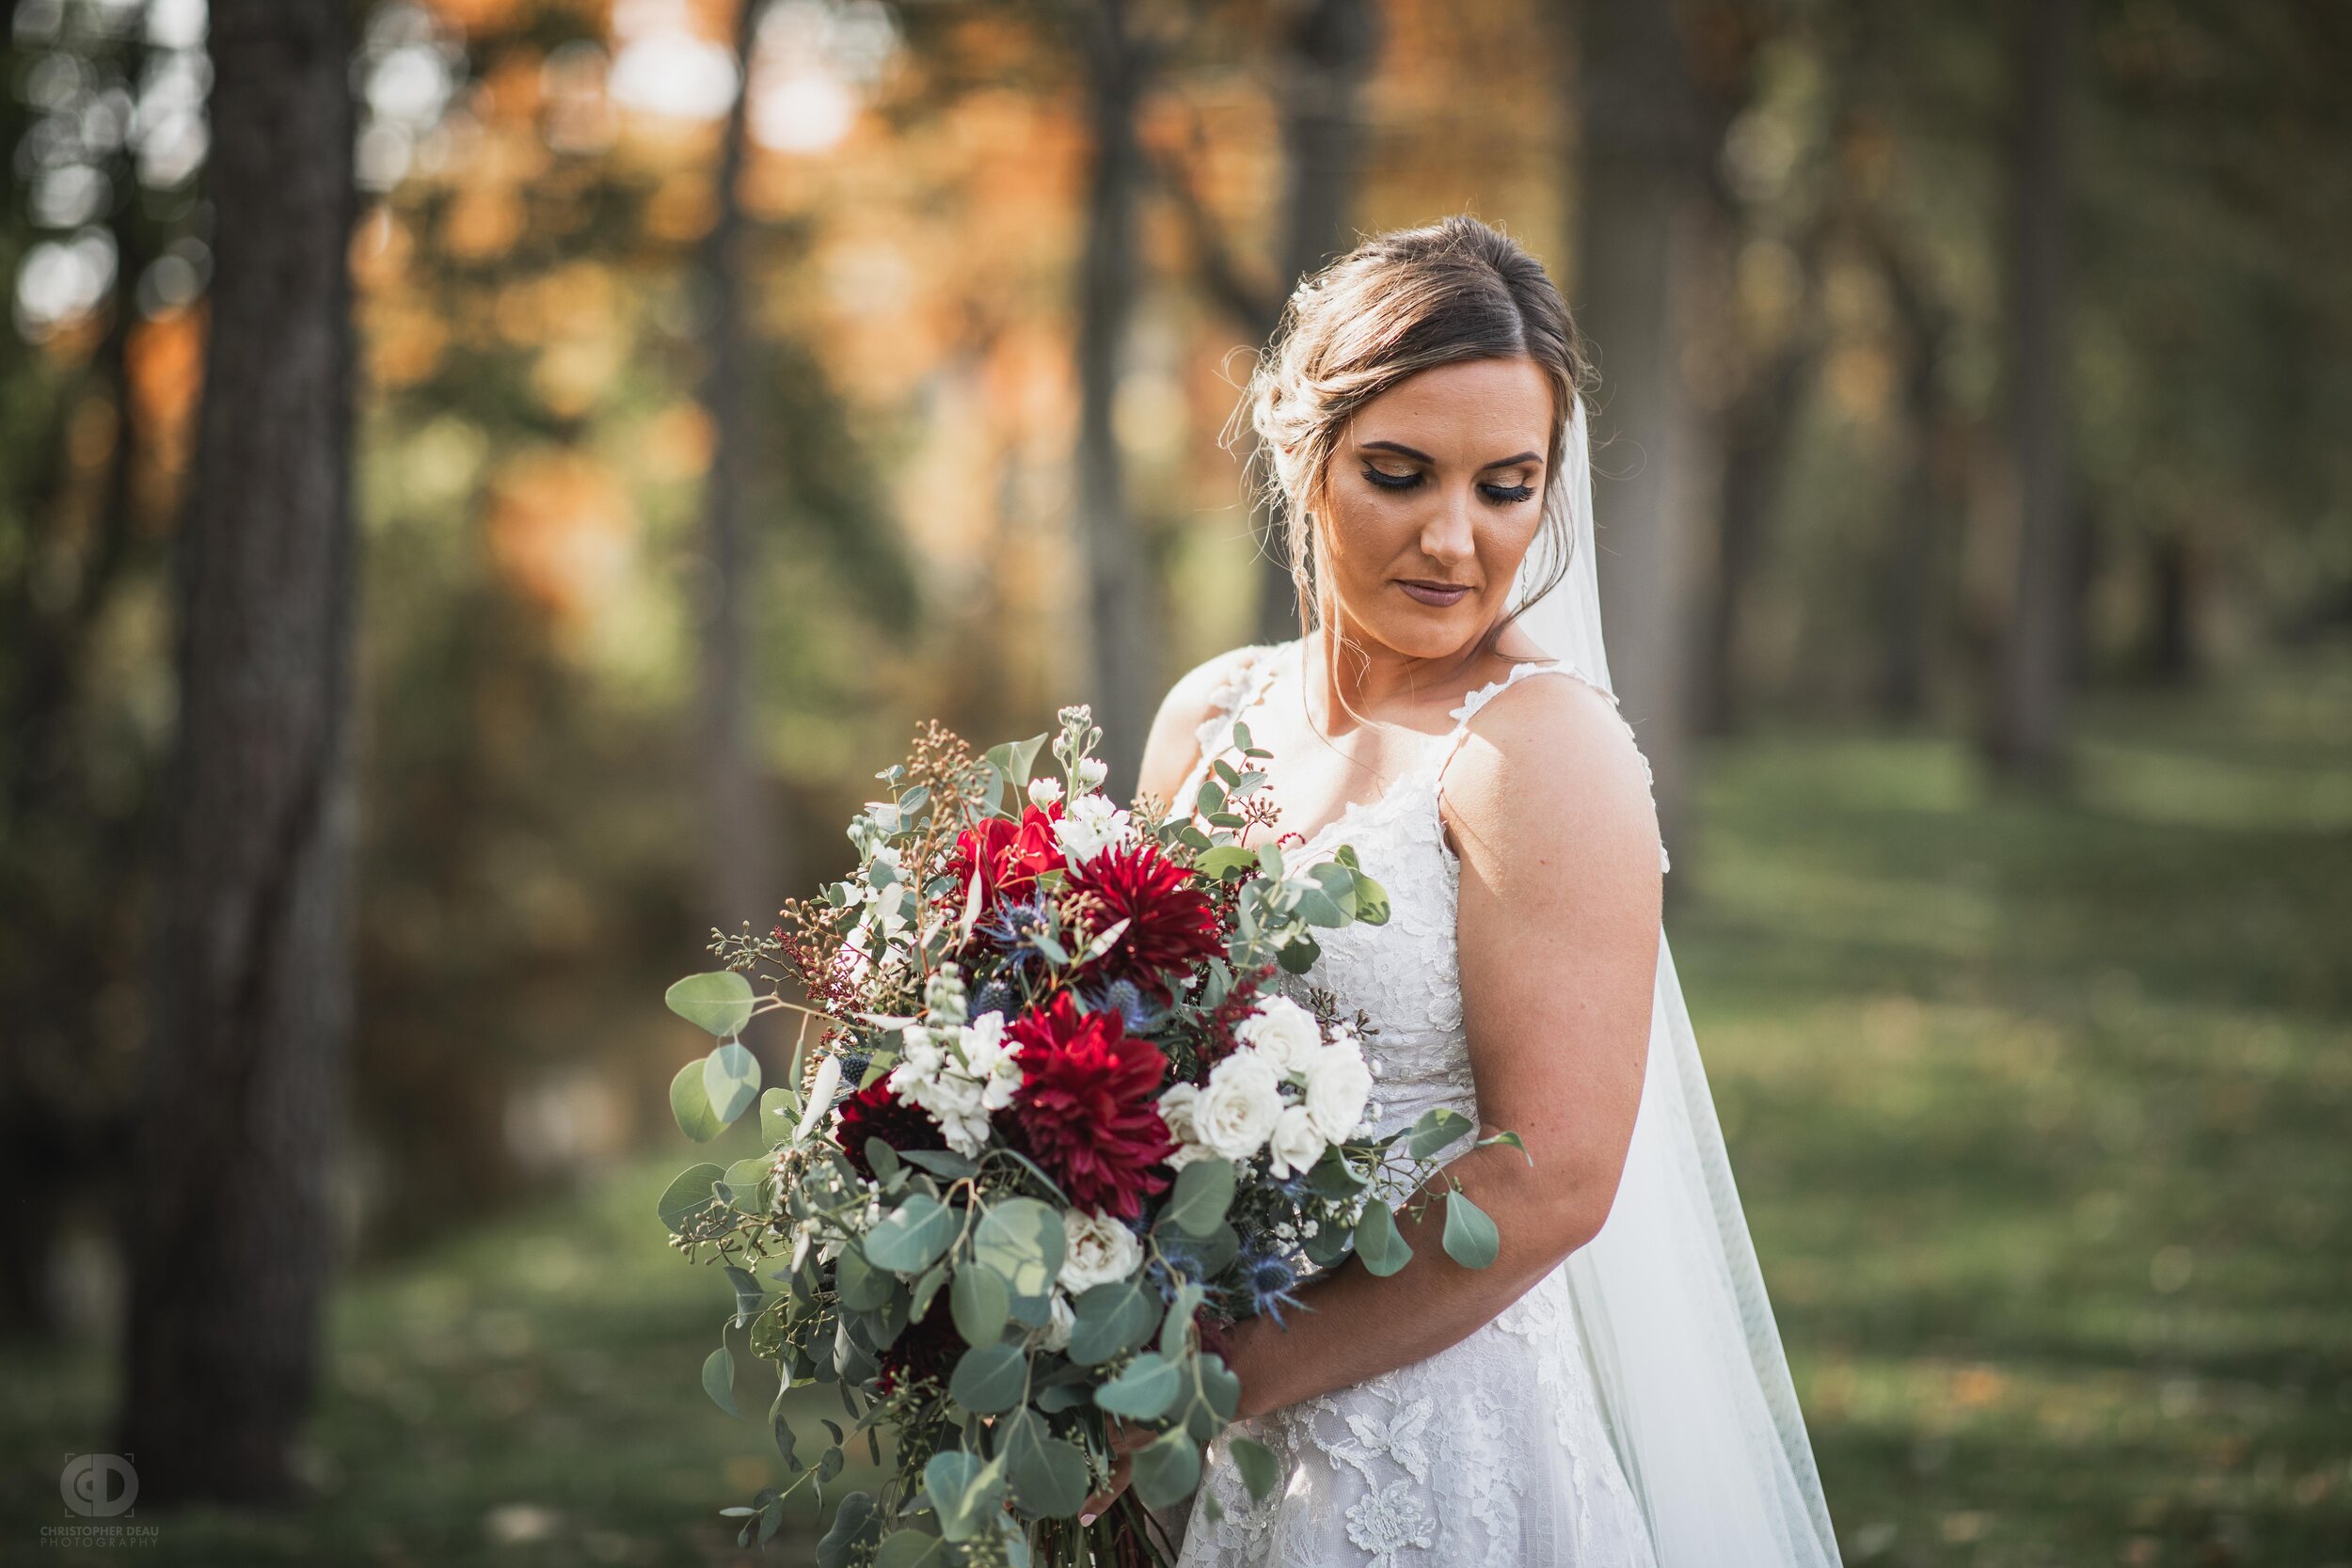  bride portrait with bouquet 